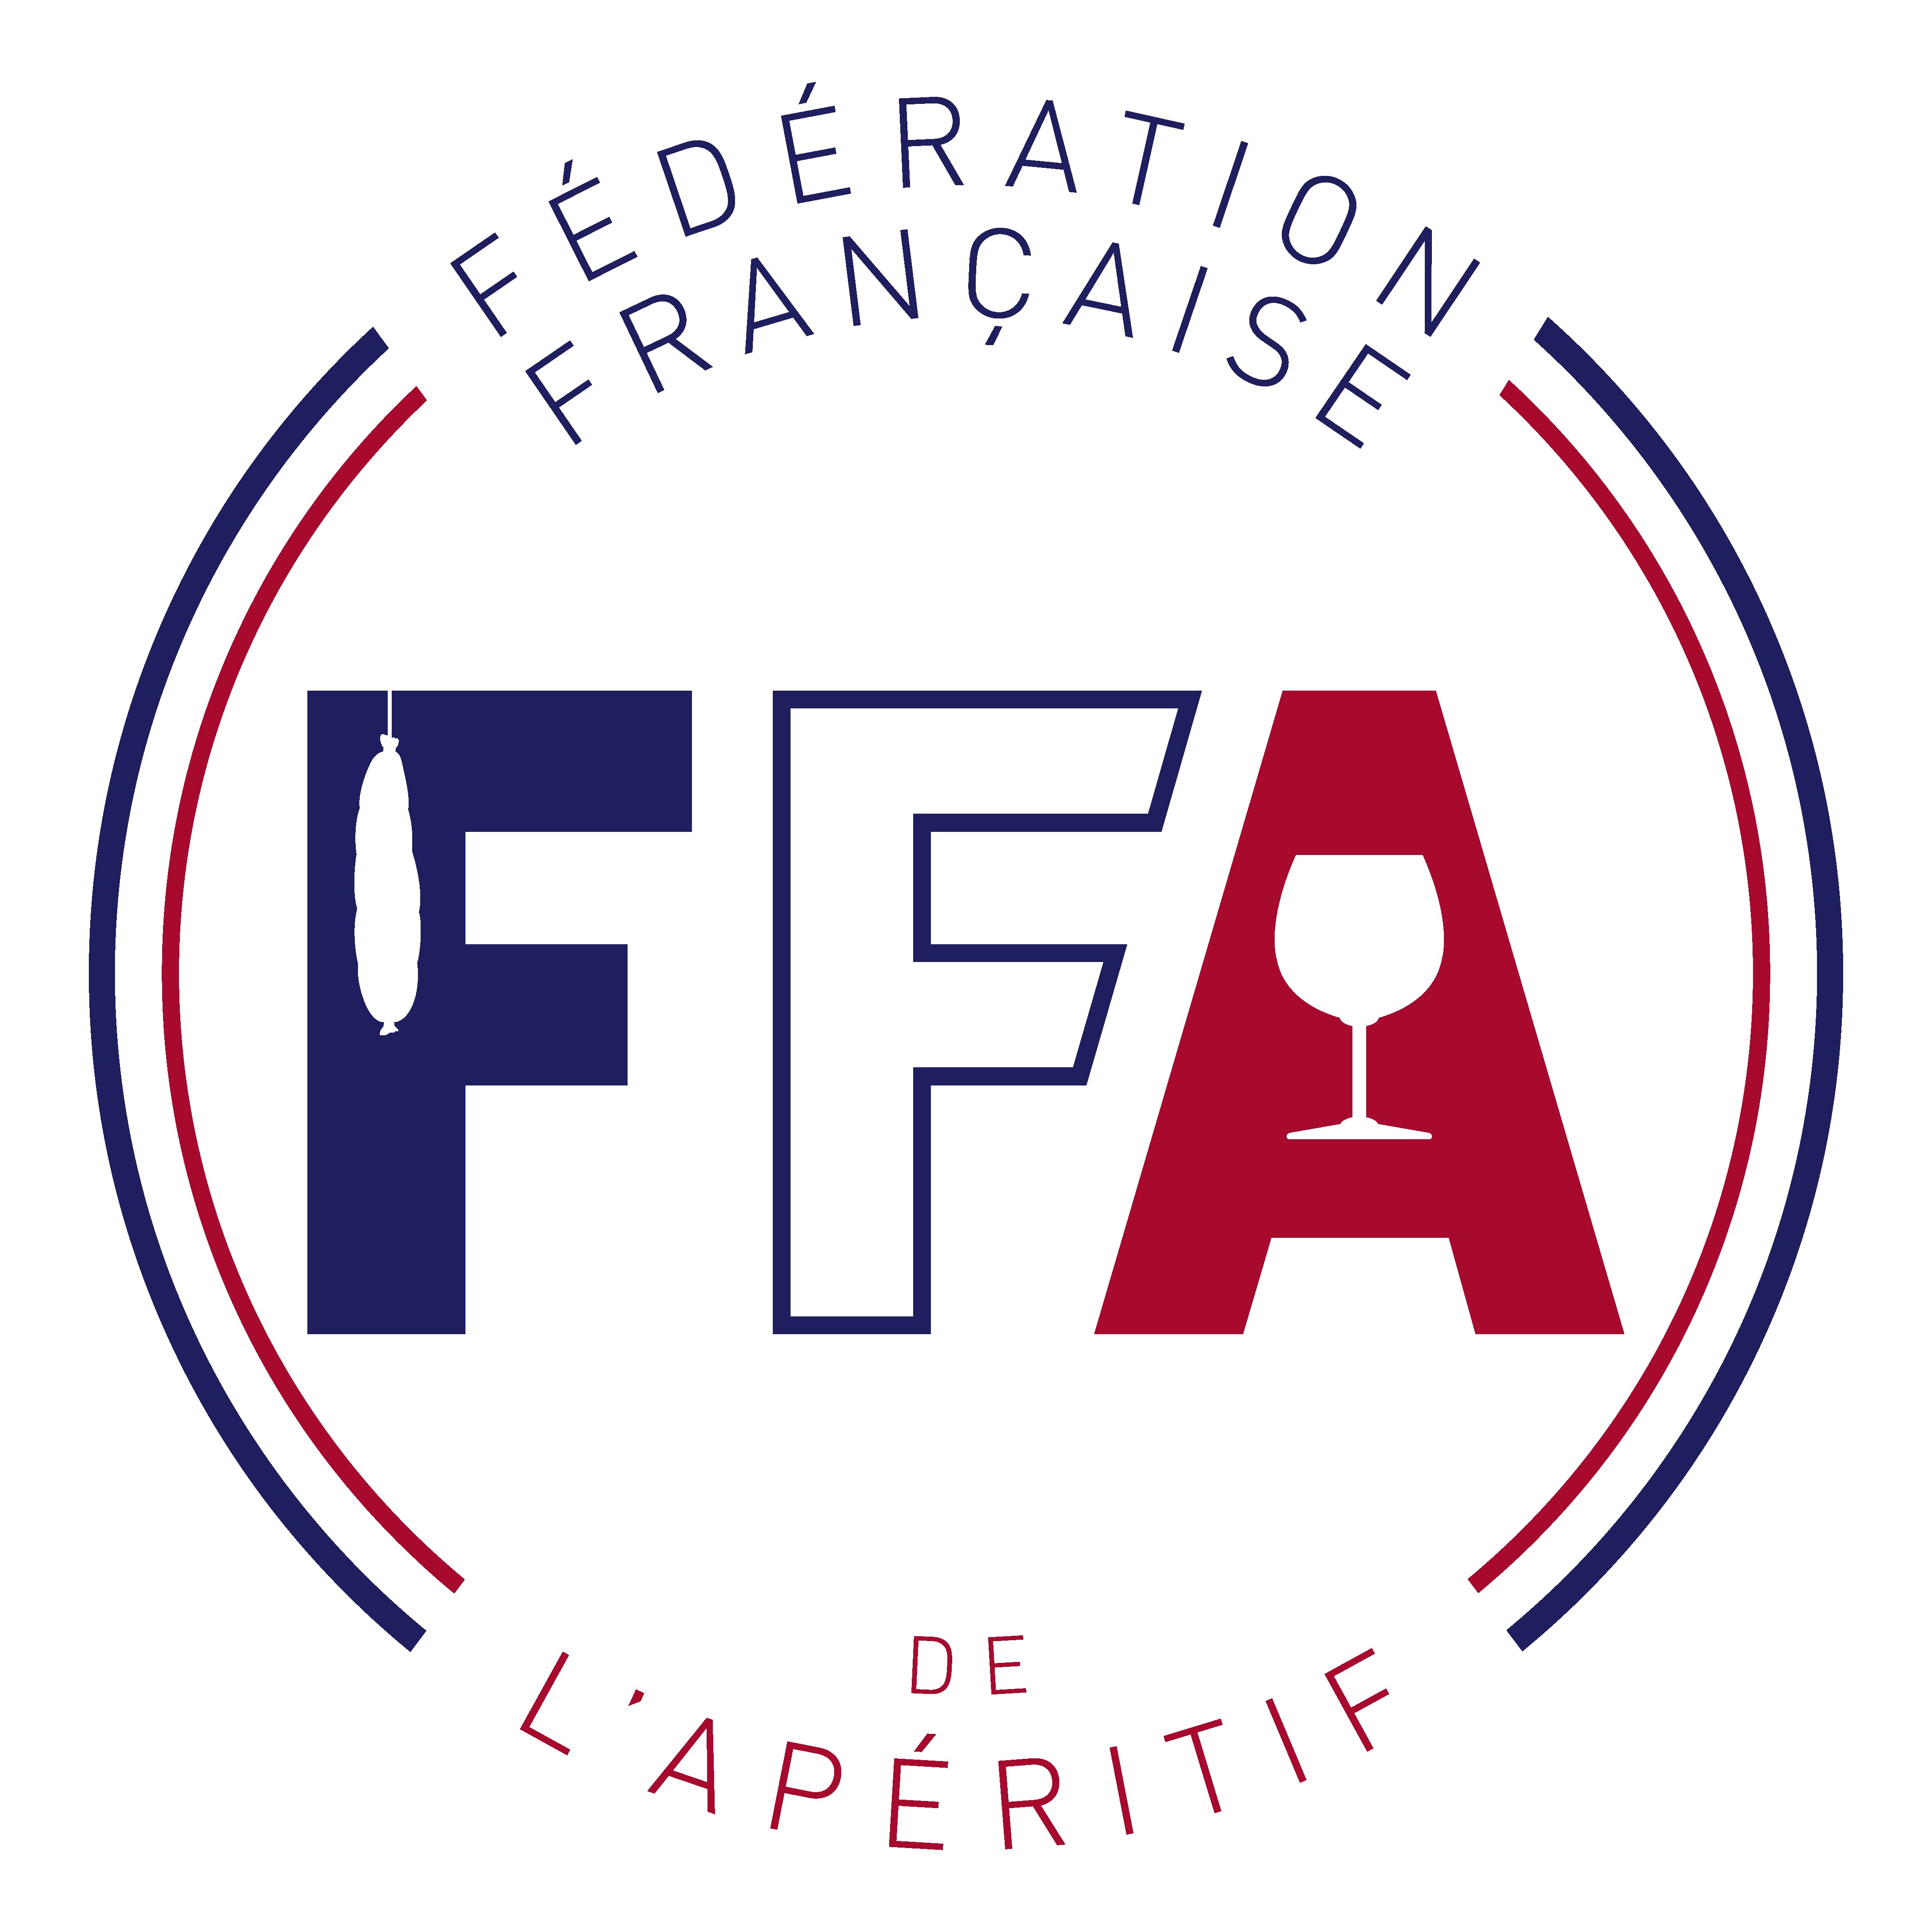 FFA-logo-Fblanc